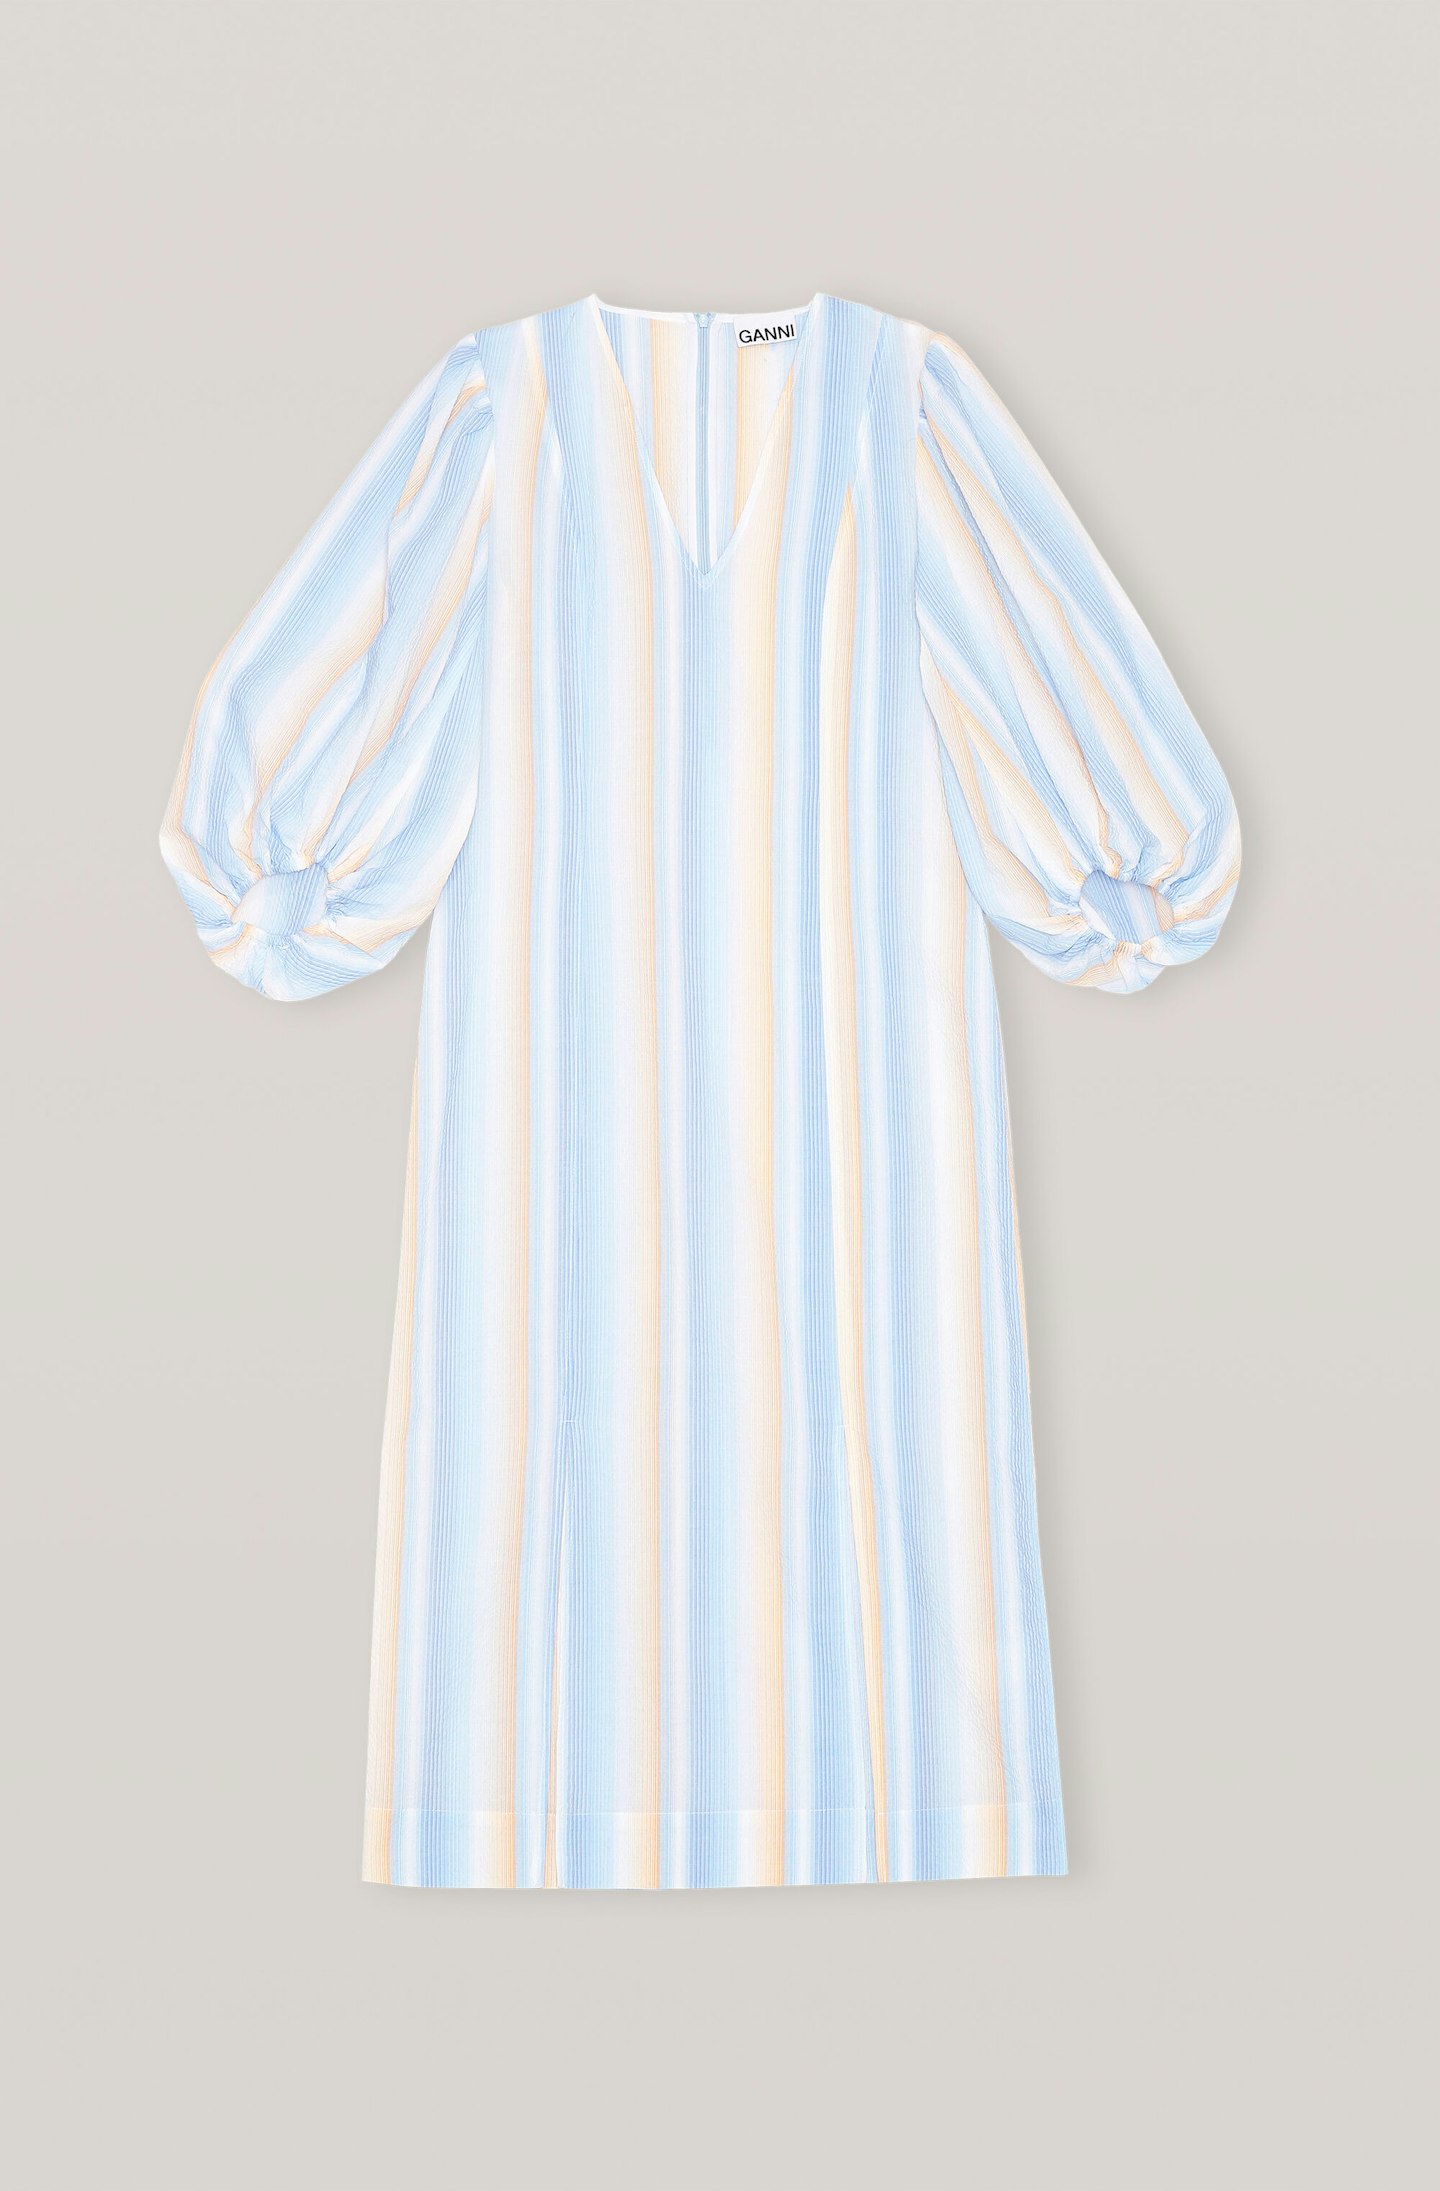 Ganni, Seersucker Stripe Dress, £215